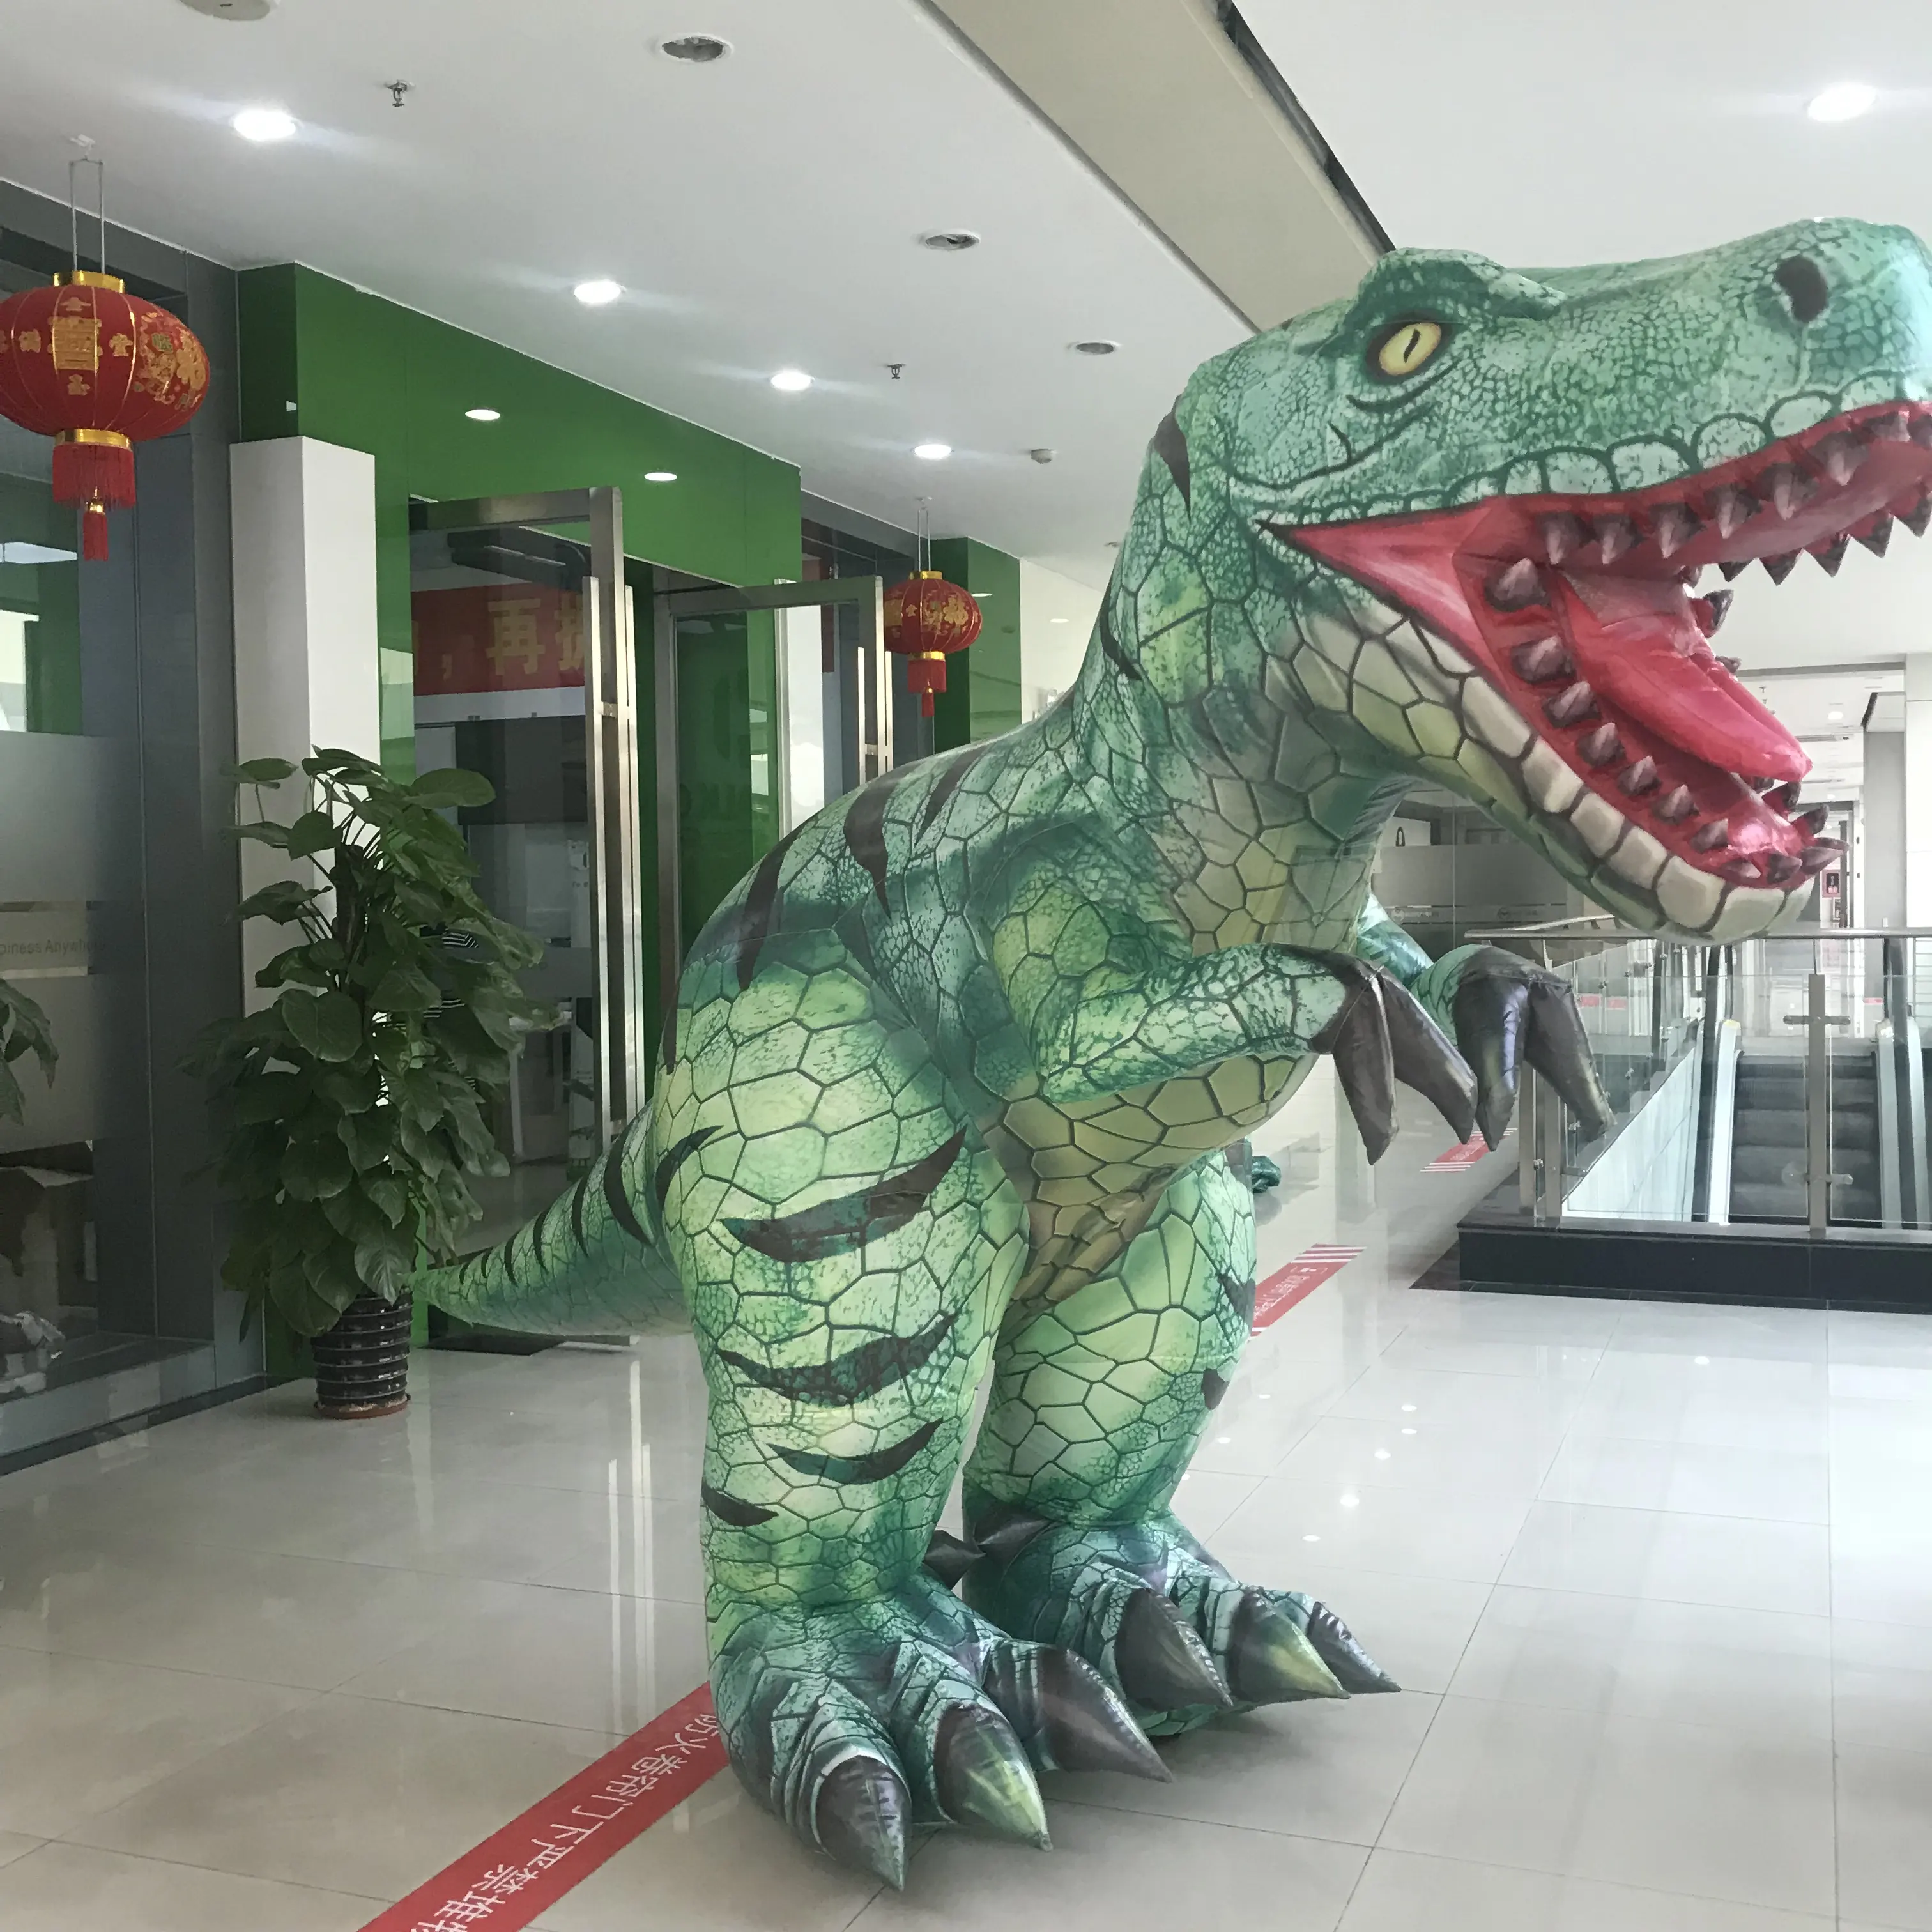 Dijual Kostum Dinosaurus Tiup Profesional Dewasa Besar 2M Terbaru